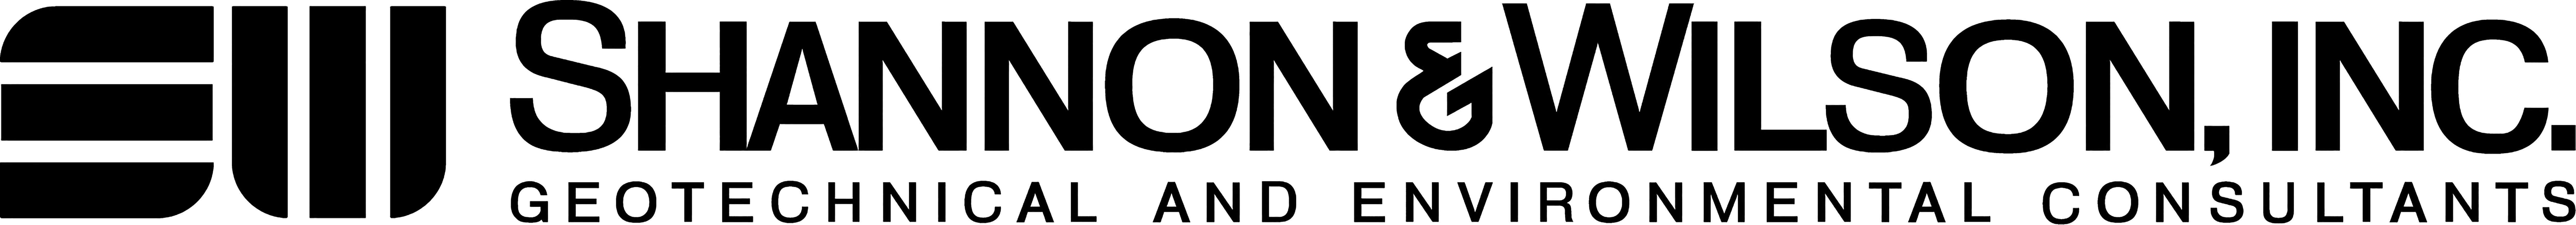 logo for silver sponsor Shannon & Wilson Inc.